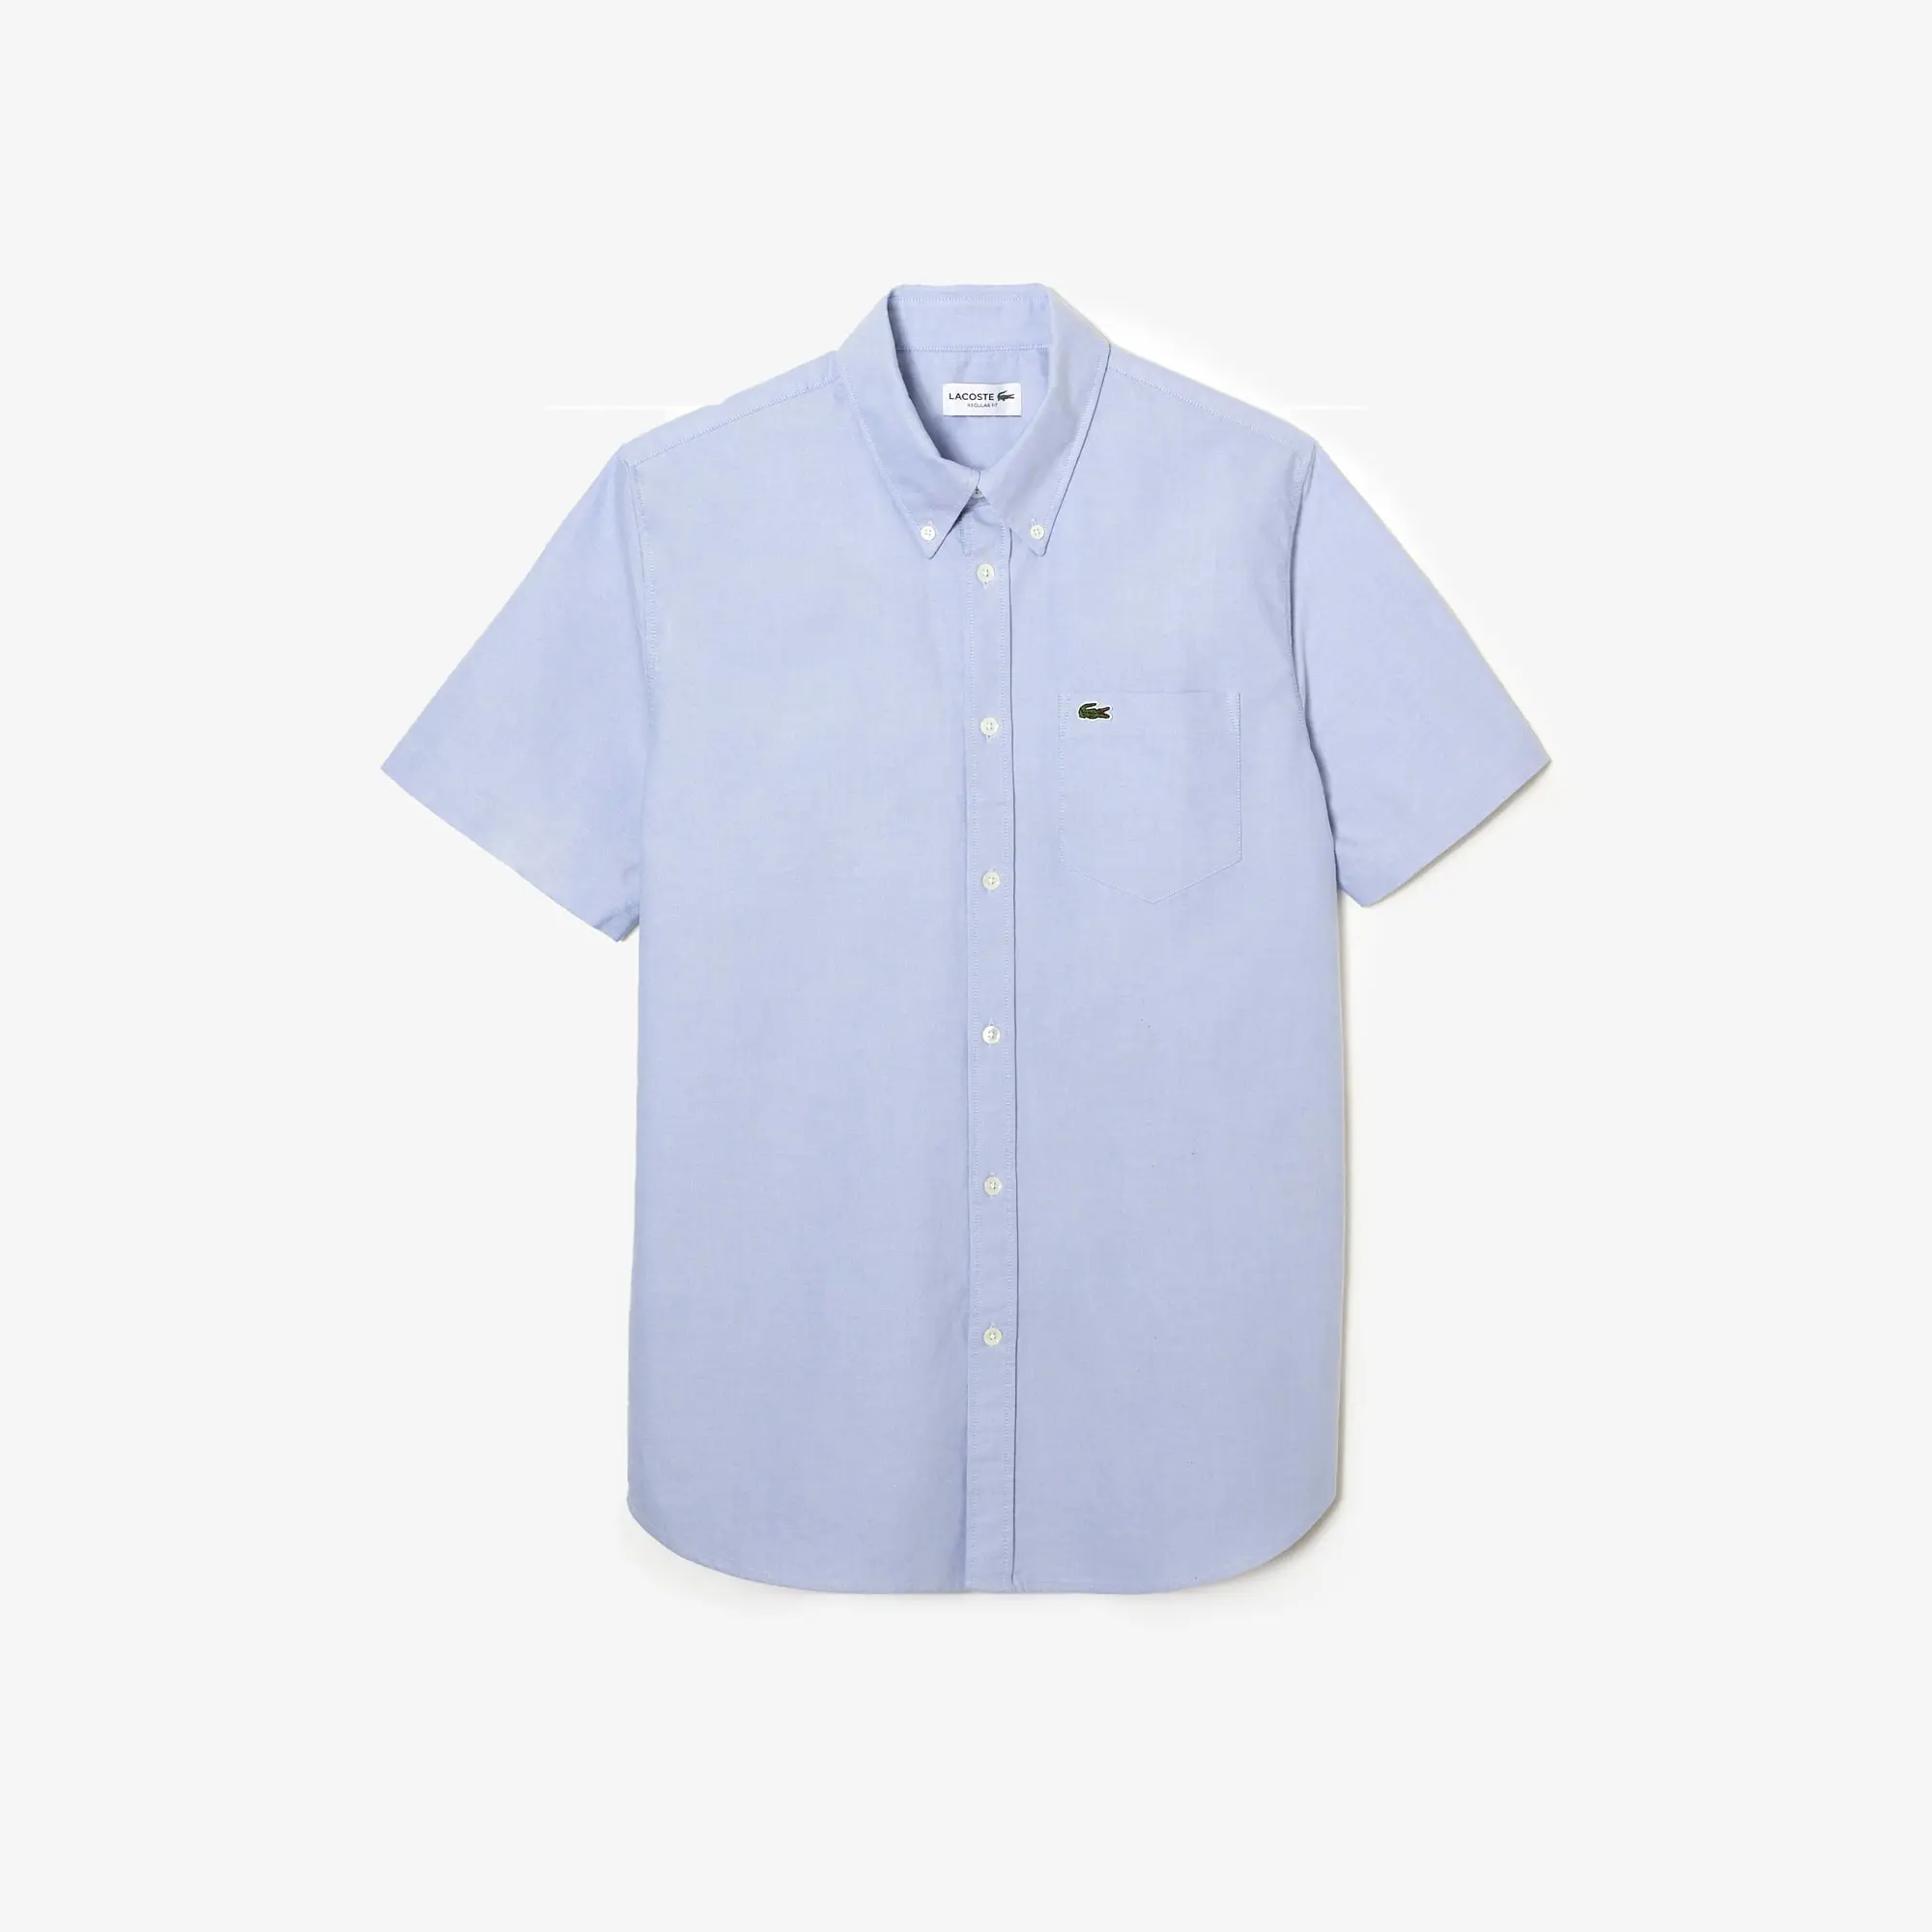 Lacoste Men's Regular Fit Oxford Cotton Shirt. 2